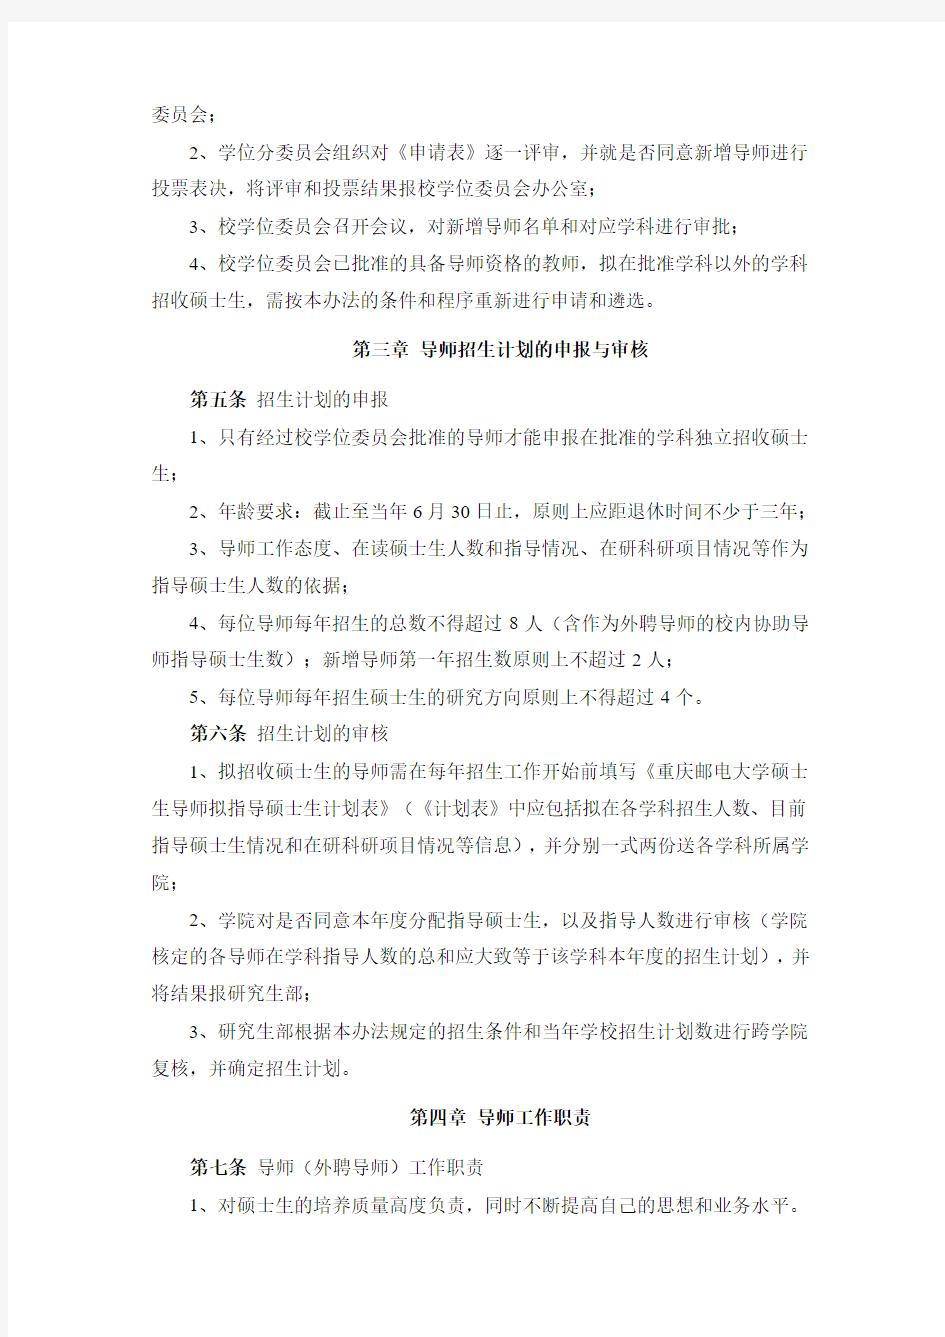 重庆邮电大学硕士研究生指导教师工作管理办法(试行)